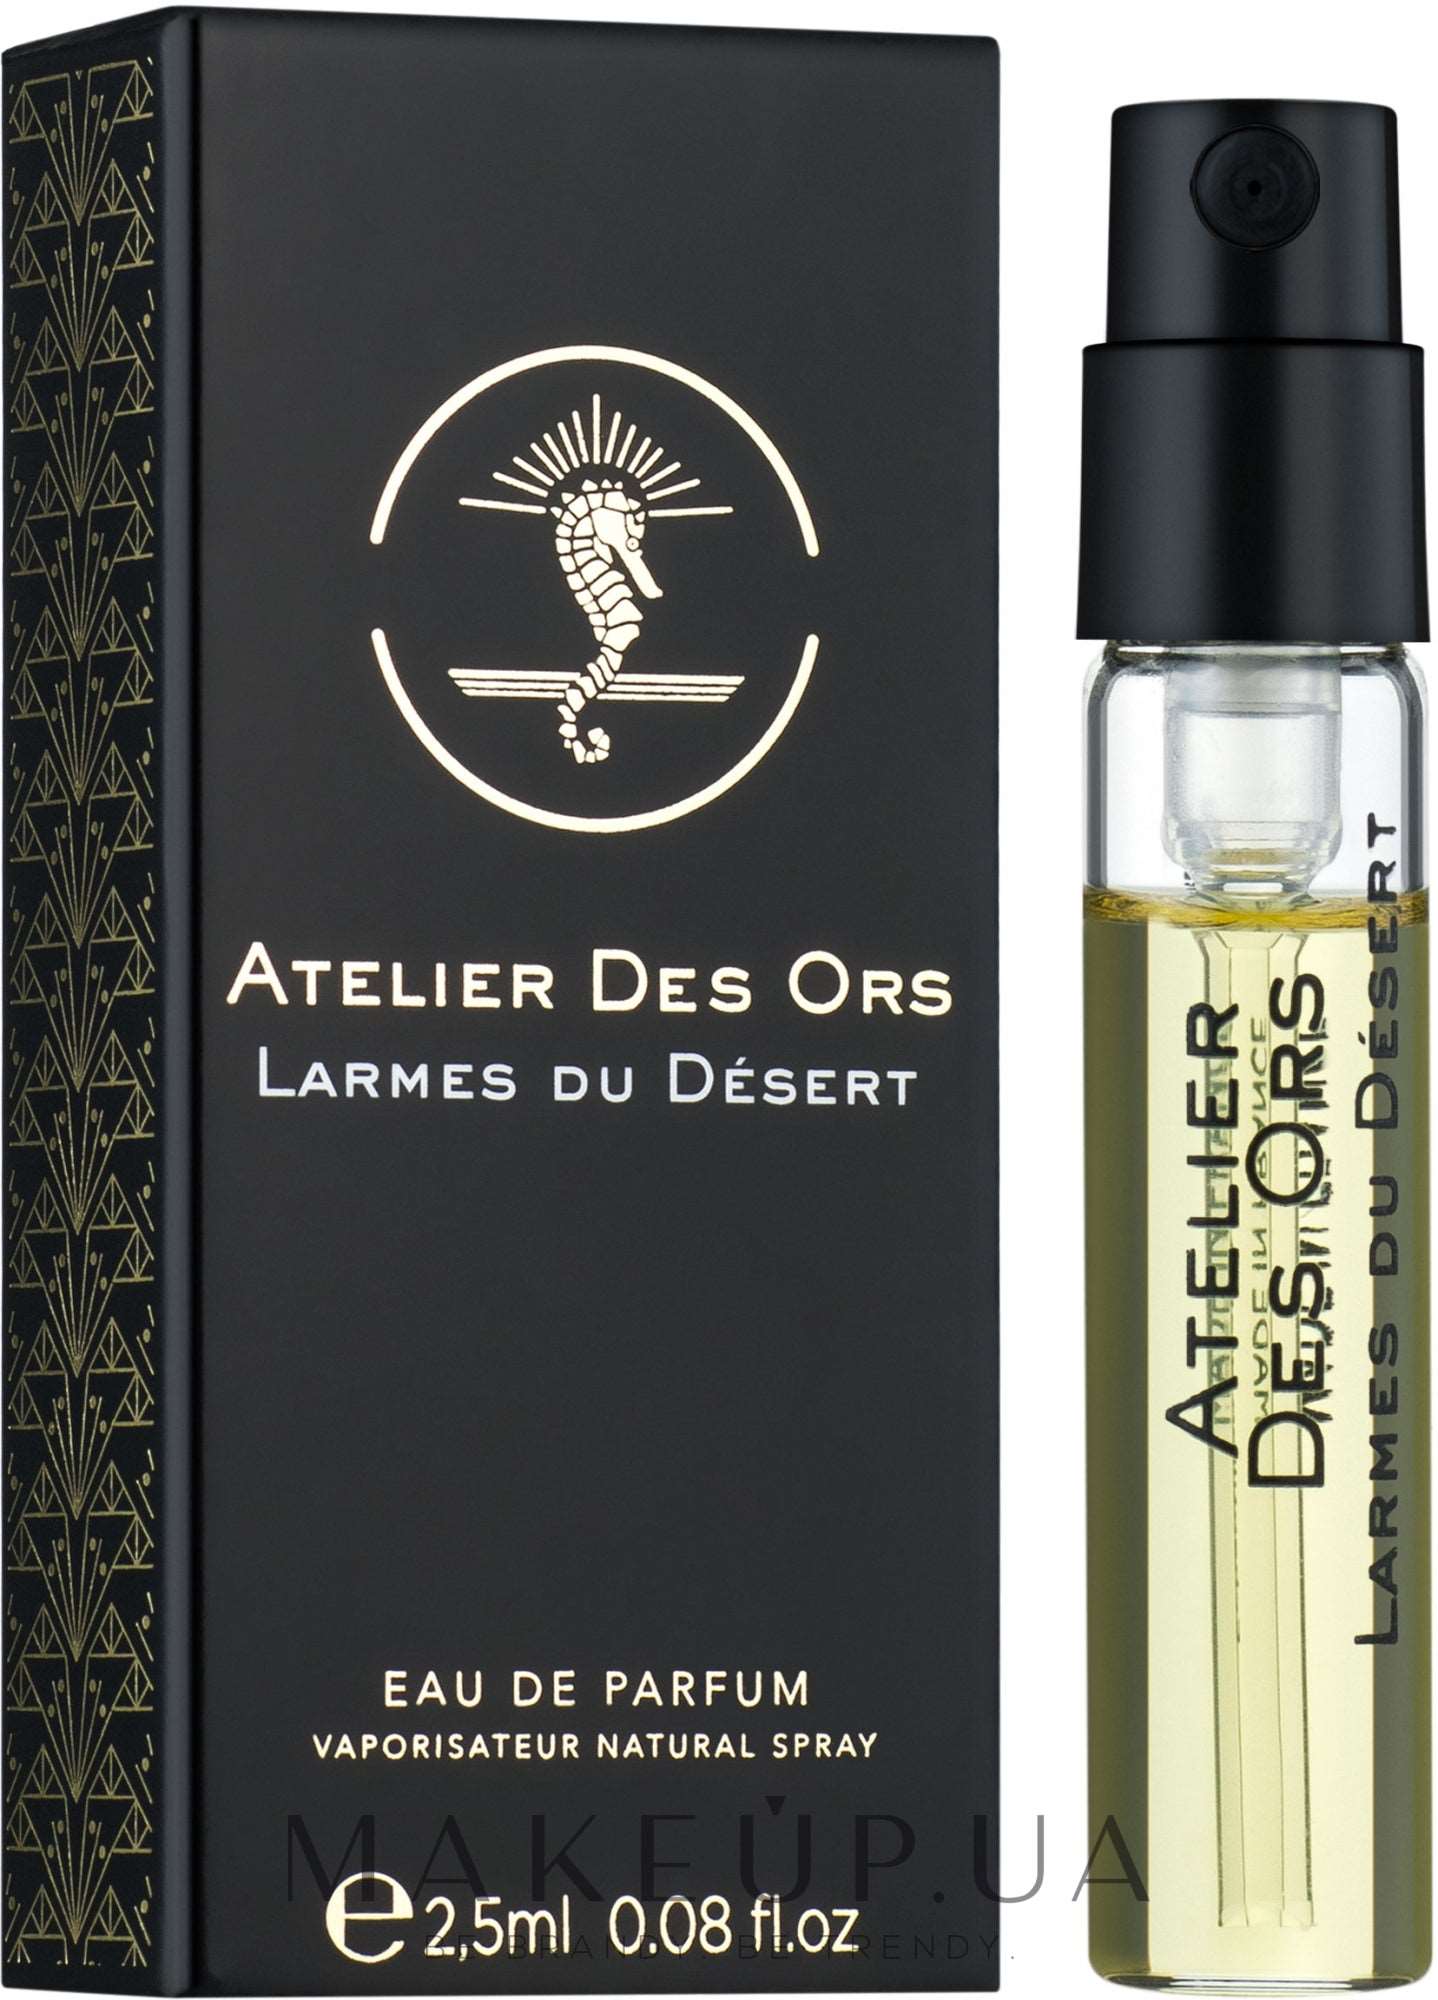 Atelier Des Ors Larmes du Desert 2.5ml 0.08 fl. oz. Officielle parfumeprøver